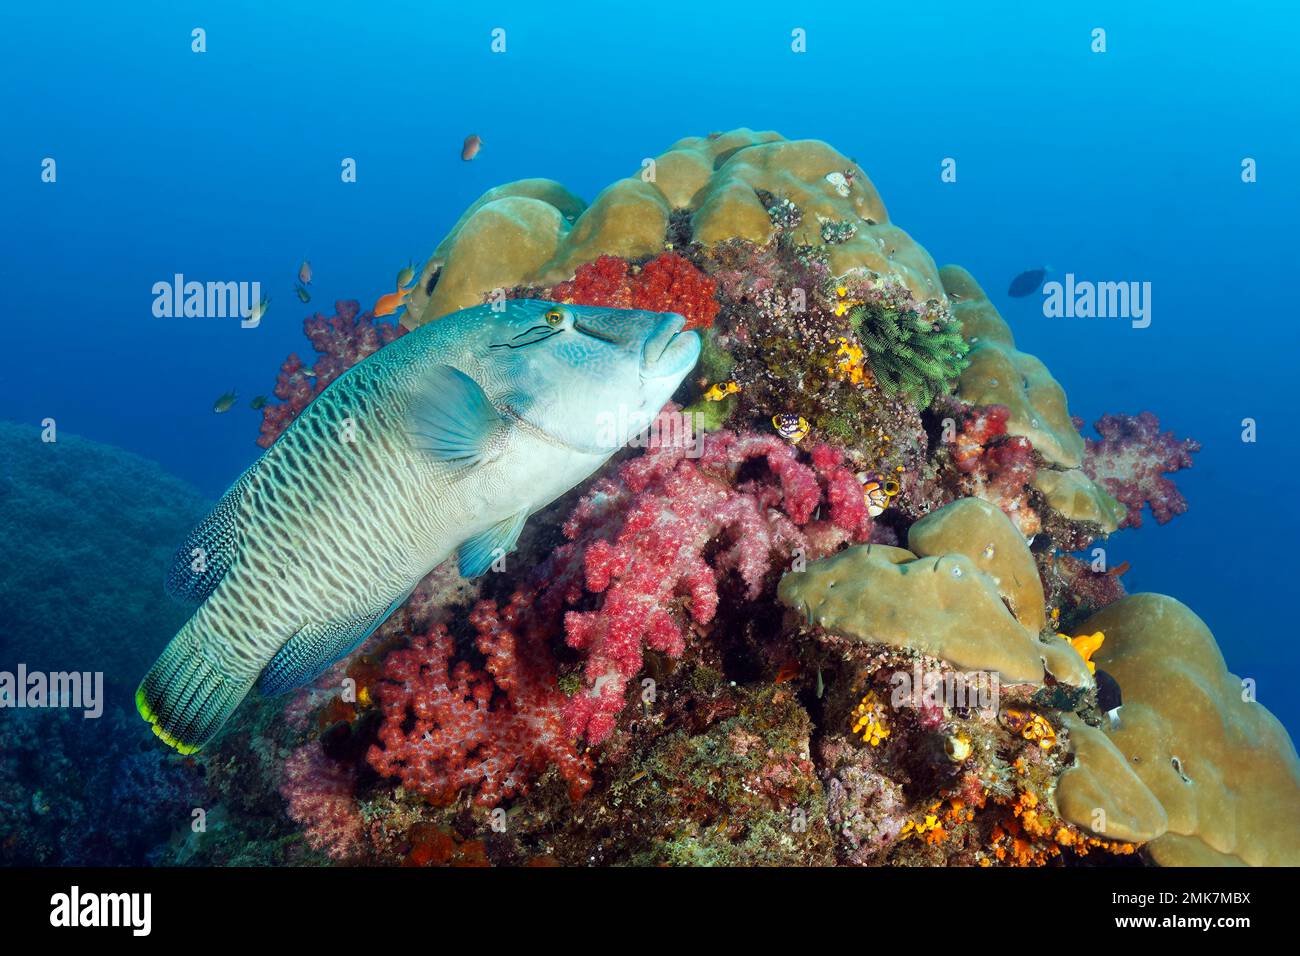 Napoleon-Humphead-Rasse (Cheilinus undulatus), halb erwachsen, schwimmt über Korallenriff dicht bedeckt mit Korallen, Schwämmen und niederen Tieren, unten Stockfoto